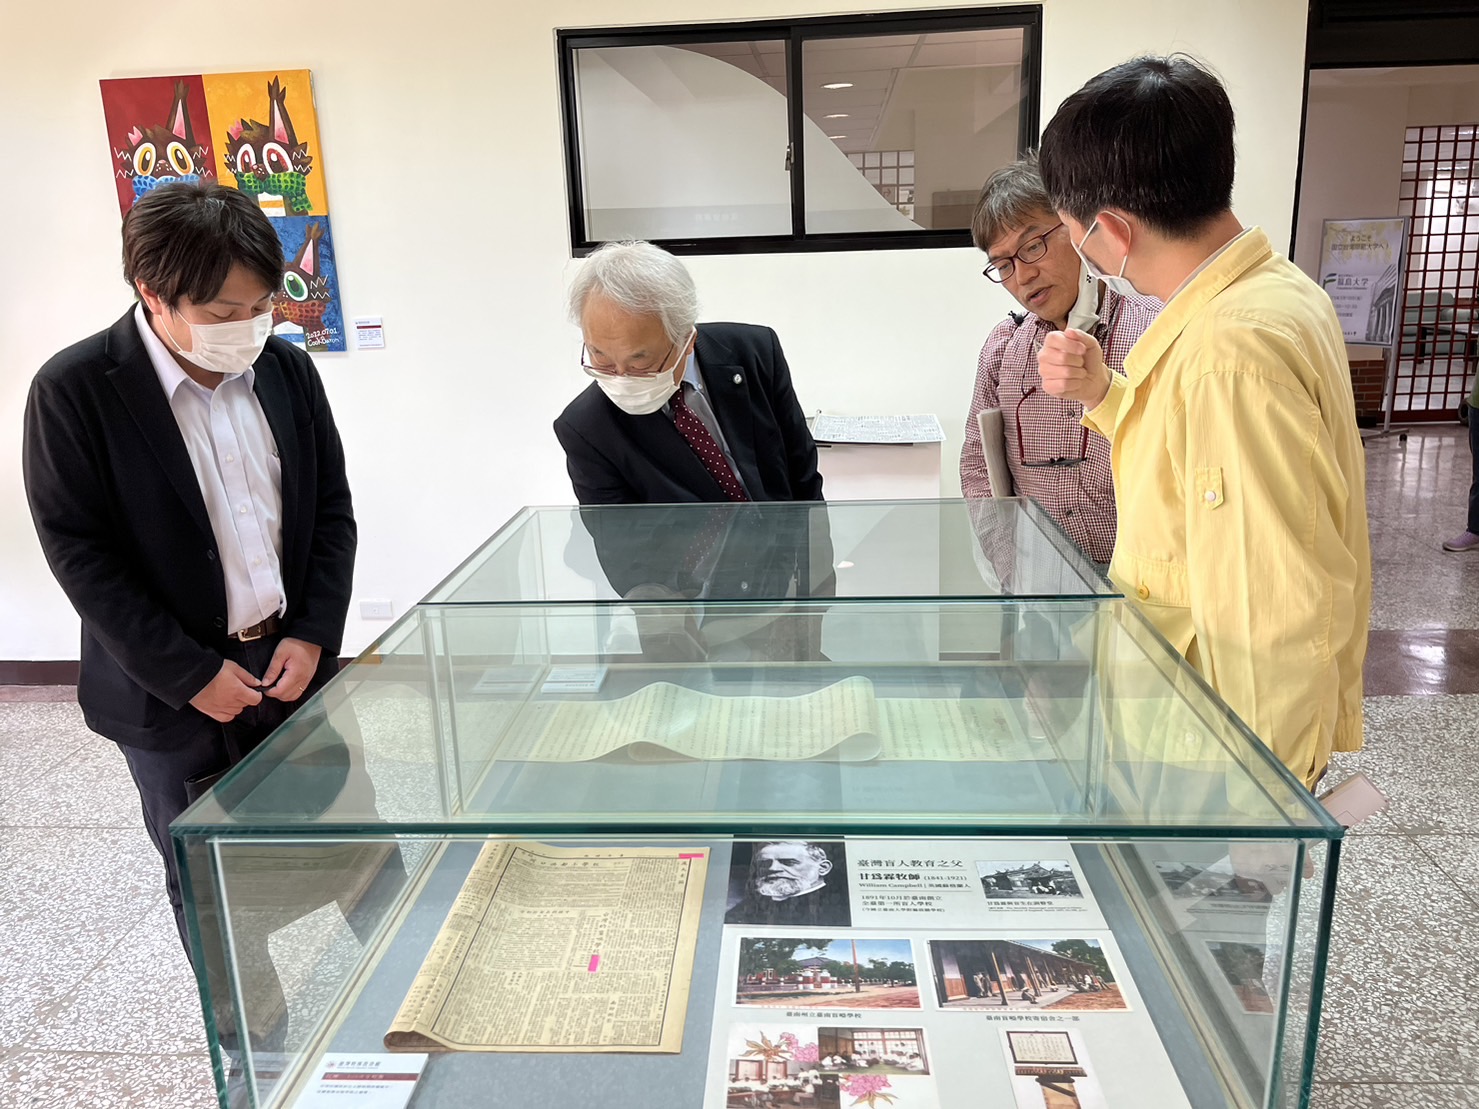 日本福島大學副校長谷雅泰教授與高橋純一准教授蒞臨本中心參訪活動照片